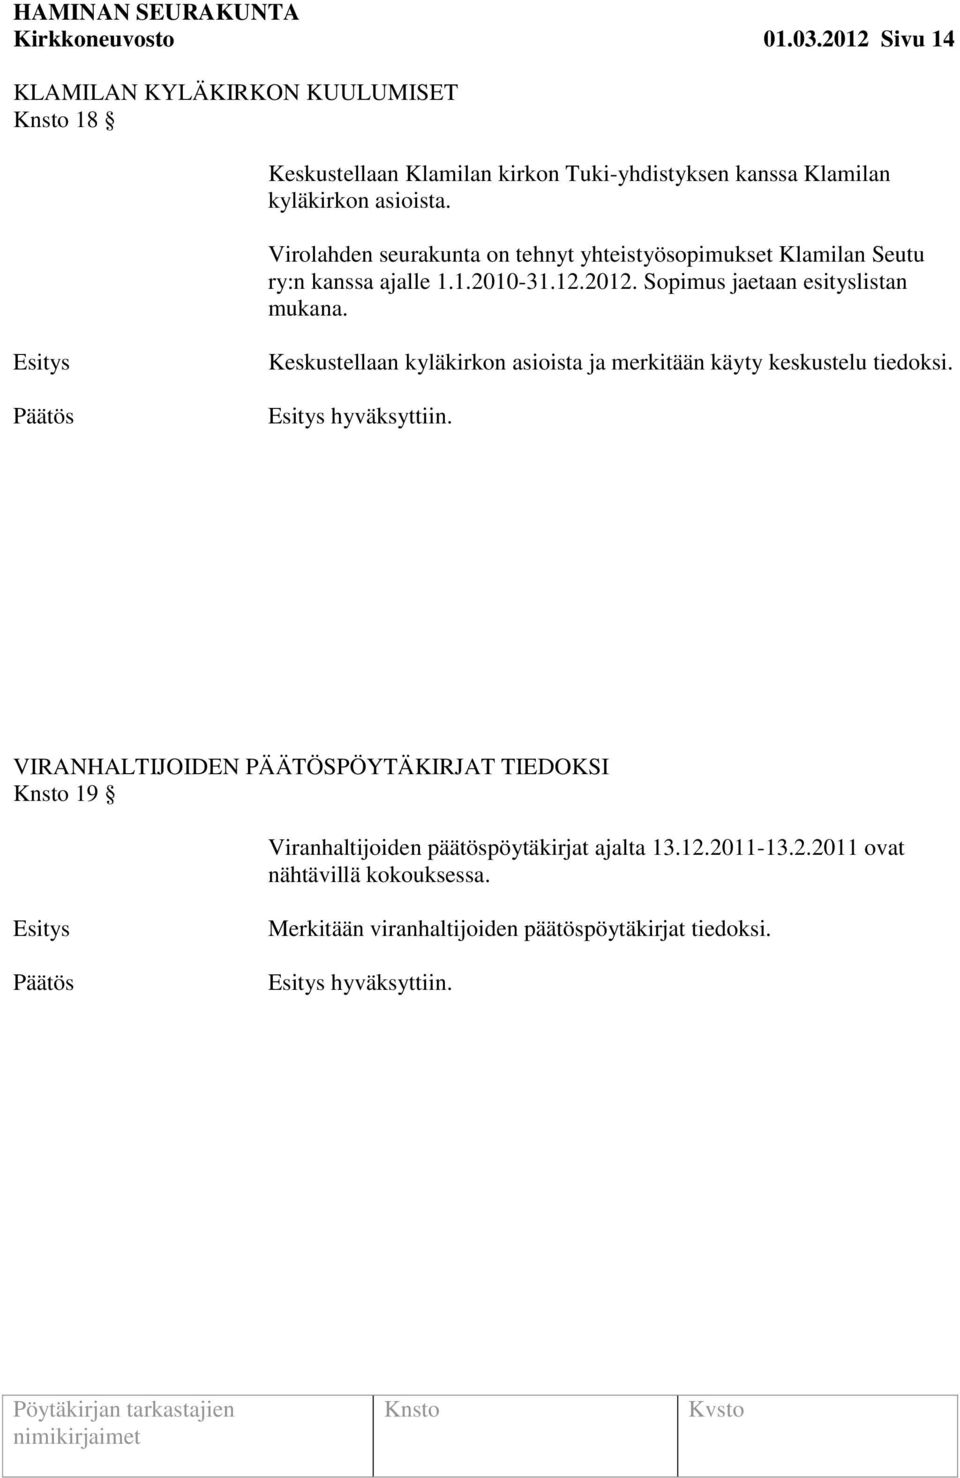 Virolahden seurakunta on tehnyt yhteistyösopimukset Klamilan Seutu ry:n kanssa ajalle 1.1.2010-31.12.2012. Sopimus jaetaan esityslistan mukana.